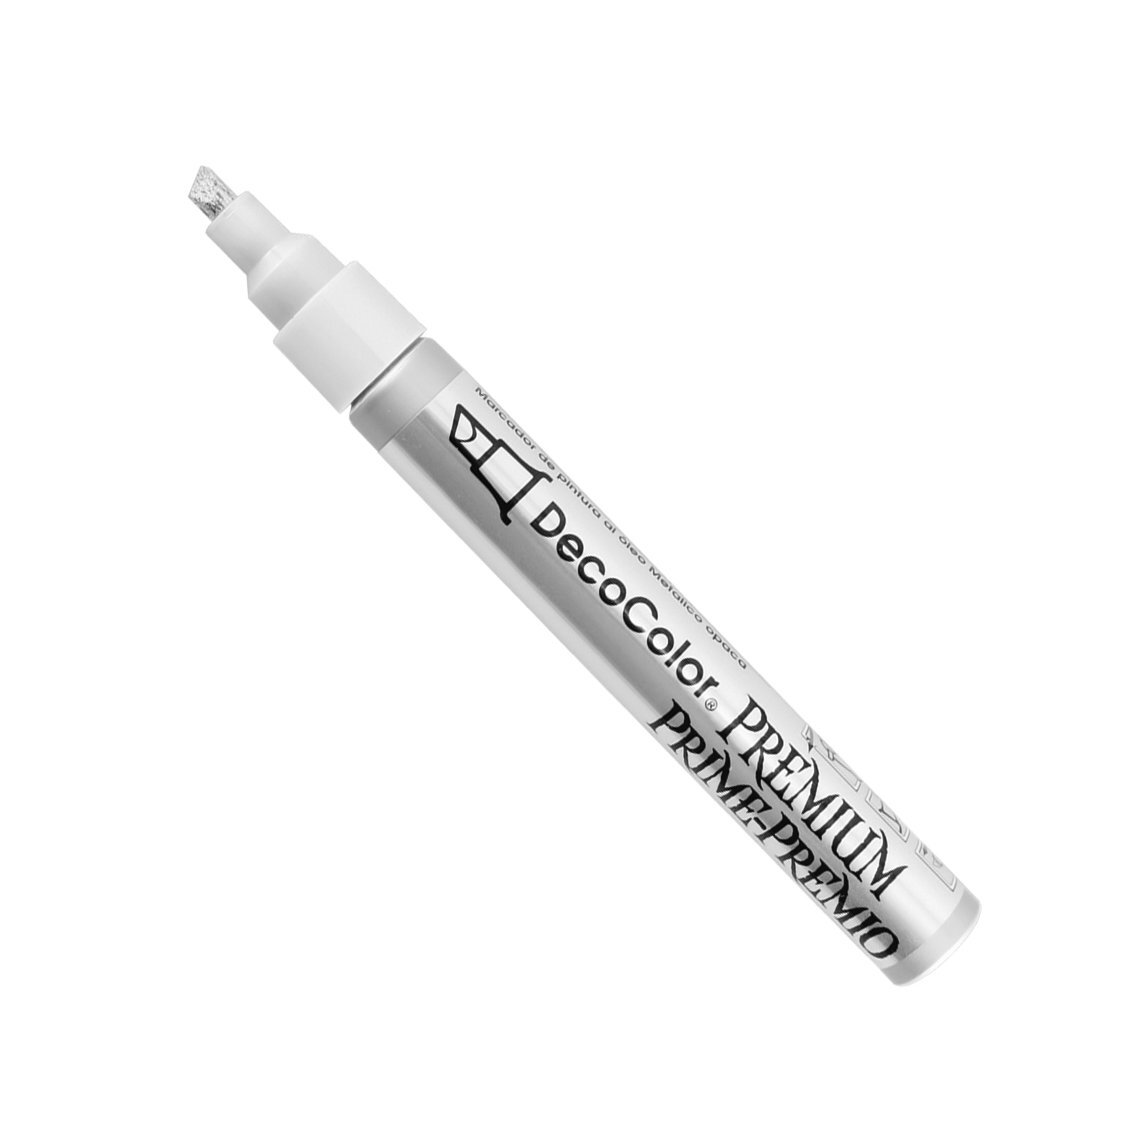 DecoColor Premium Chisel Paint Marker Leaf Finish Pen Silver